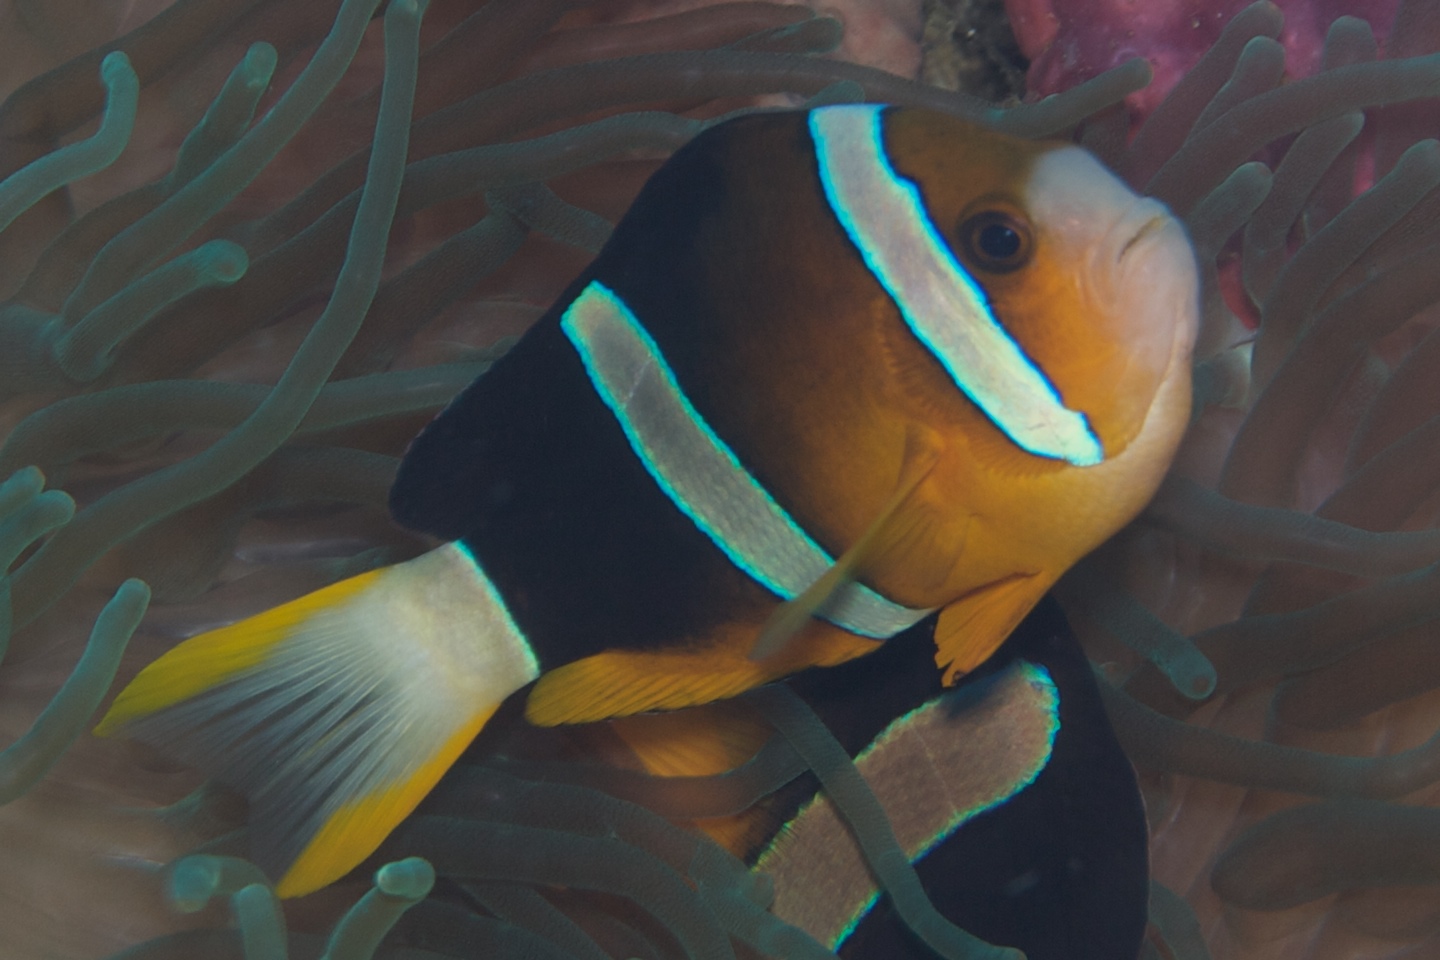 Yellowtail anemonefish